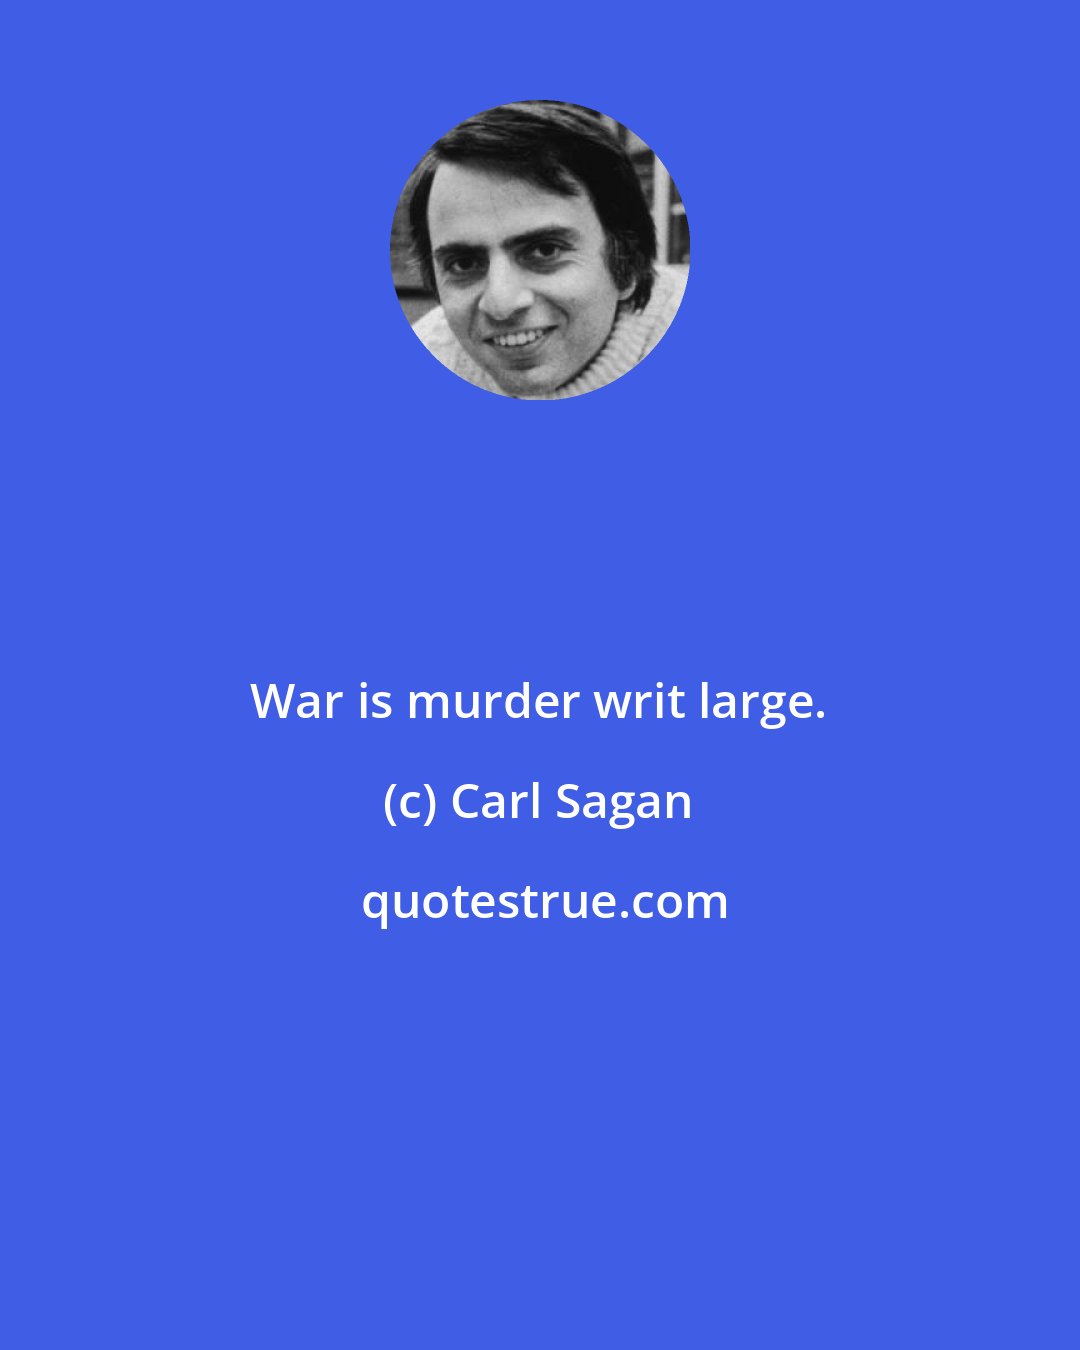 Carl Sagan: War is murder writ large.